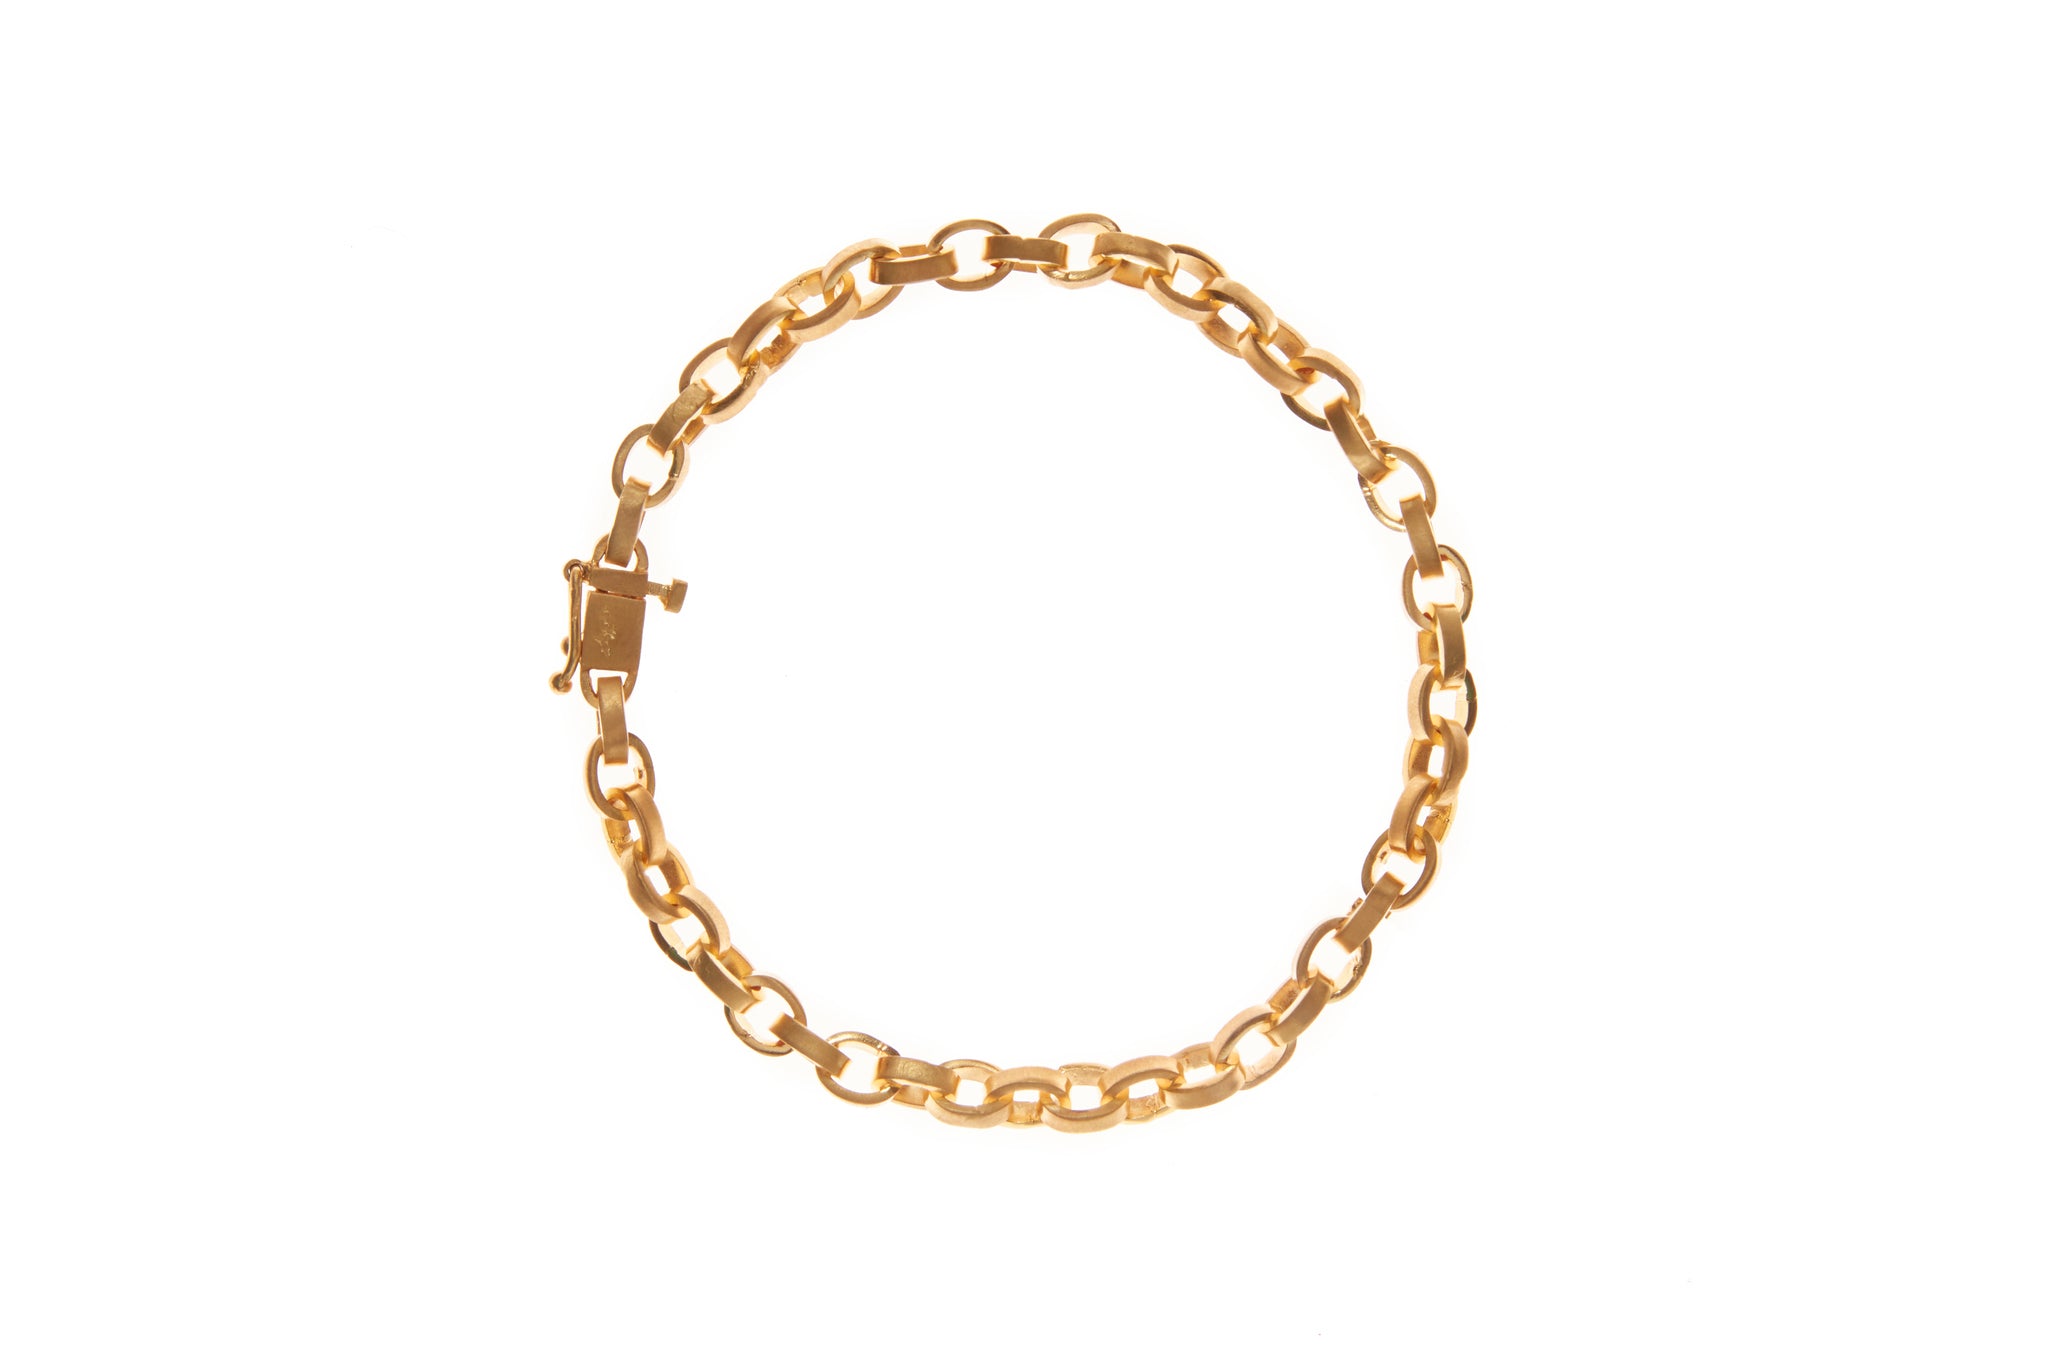 darius jewels signature chain bracelet 18k yellow gold darius khonsary